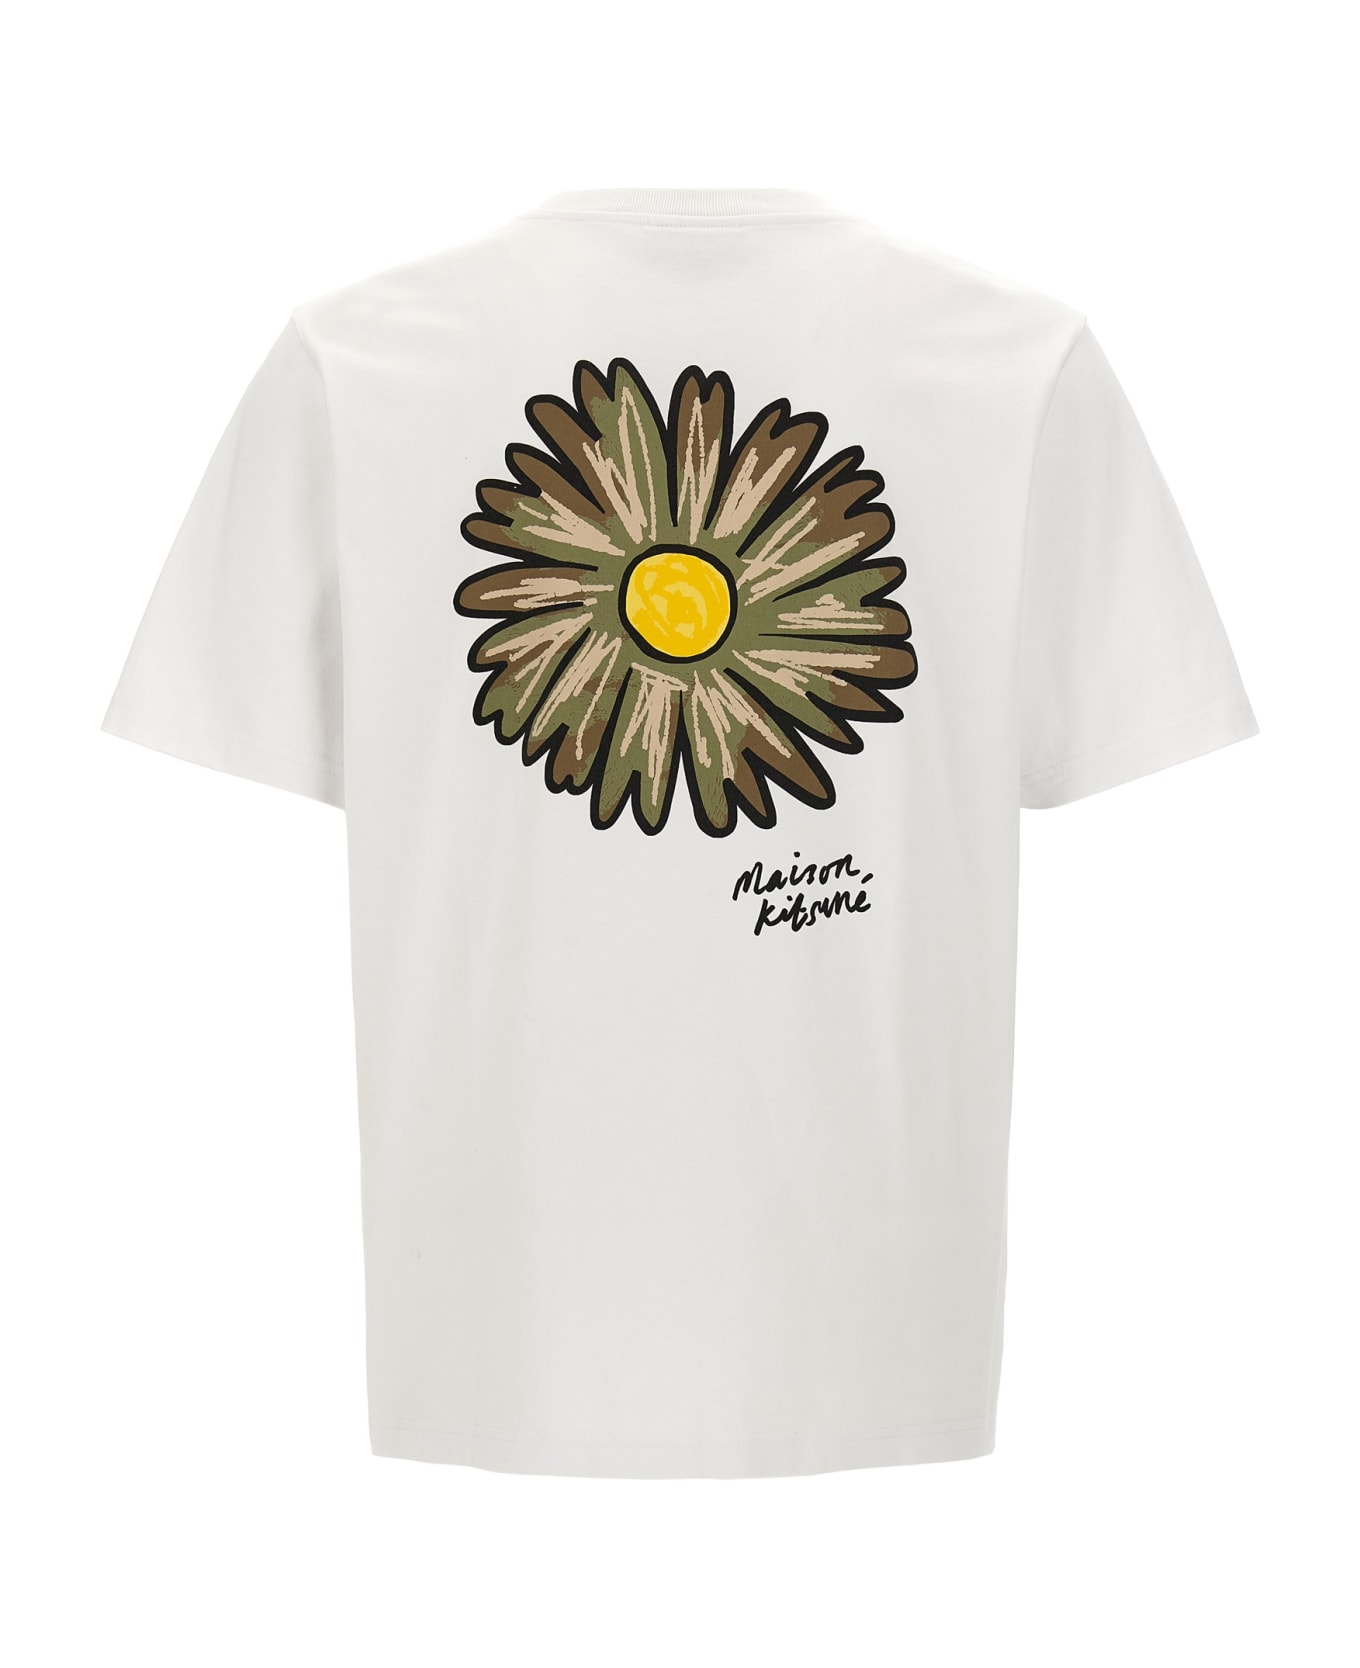 Maison Kitsuné 'floating Flower' T-shirt - White シャツ